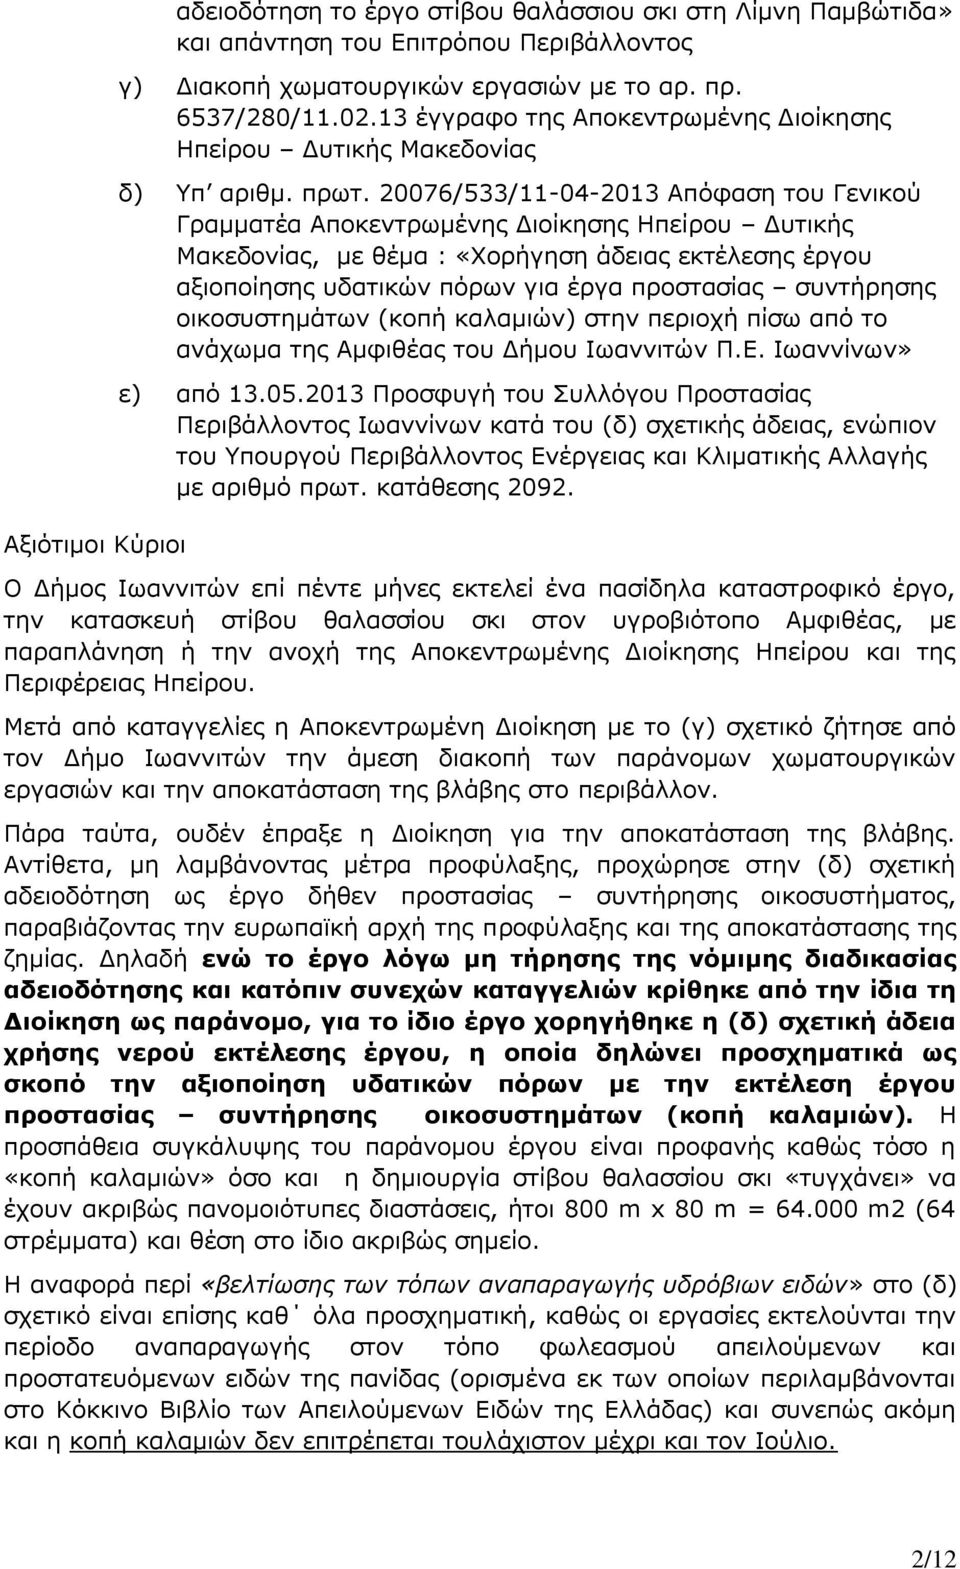 20076/533/11-04-2013 Απόφαση του Γενικού Γραμματέα Αποκεντρωμένης Διοίκησης Ηπείρου Δυτικής Μακεδονίας, με θέμα : «Χορήγηση άδειας εκτέλεσης έργου αξιοποίησης υδατικών πόρων για έργα προστασίας